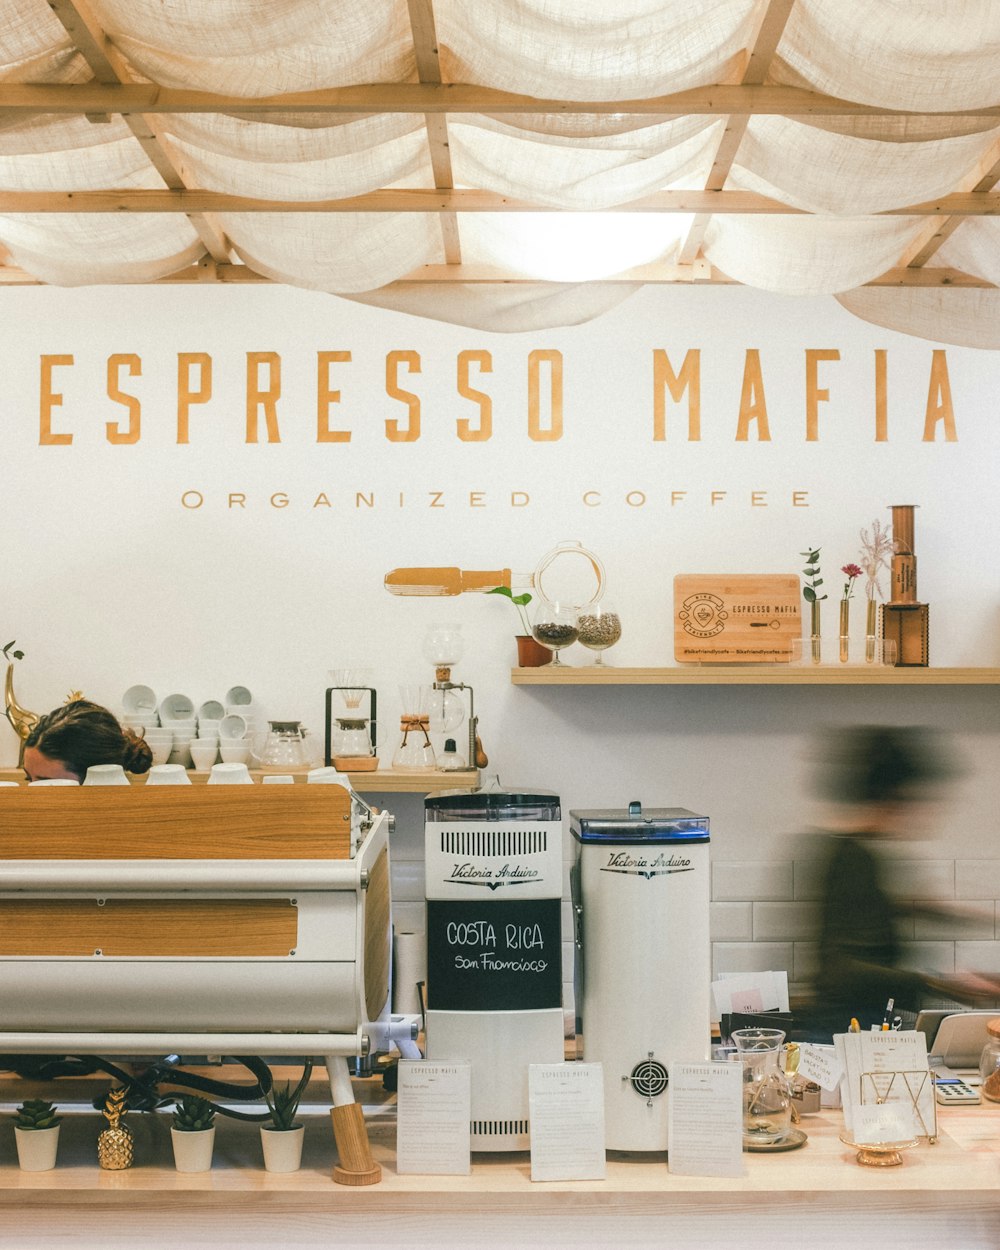 Espresso Mafia facade